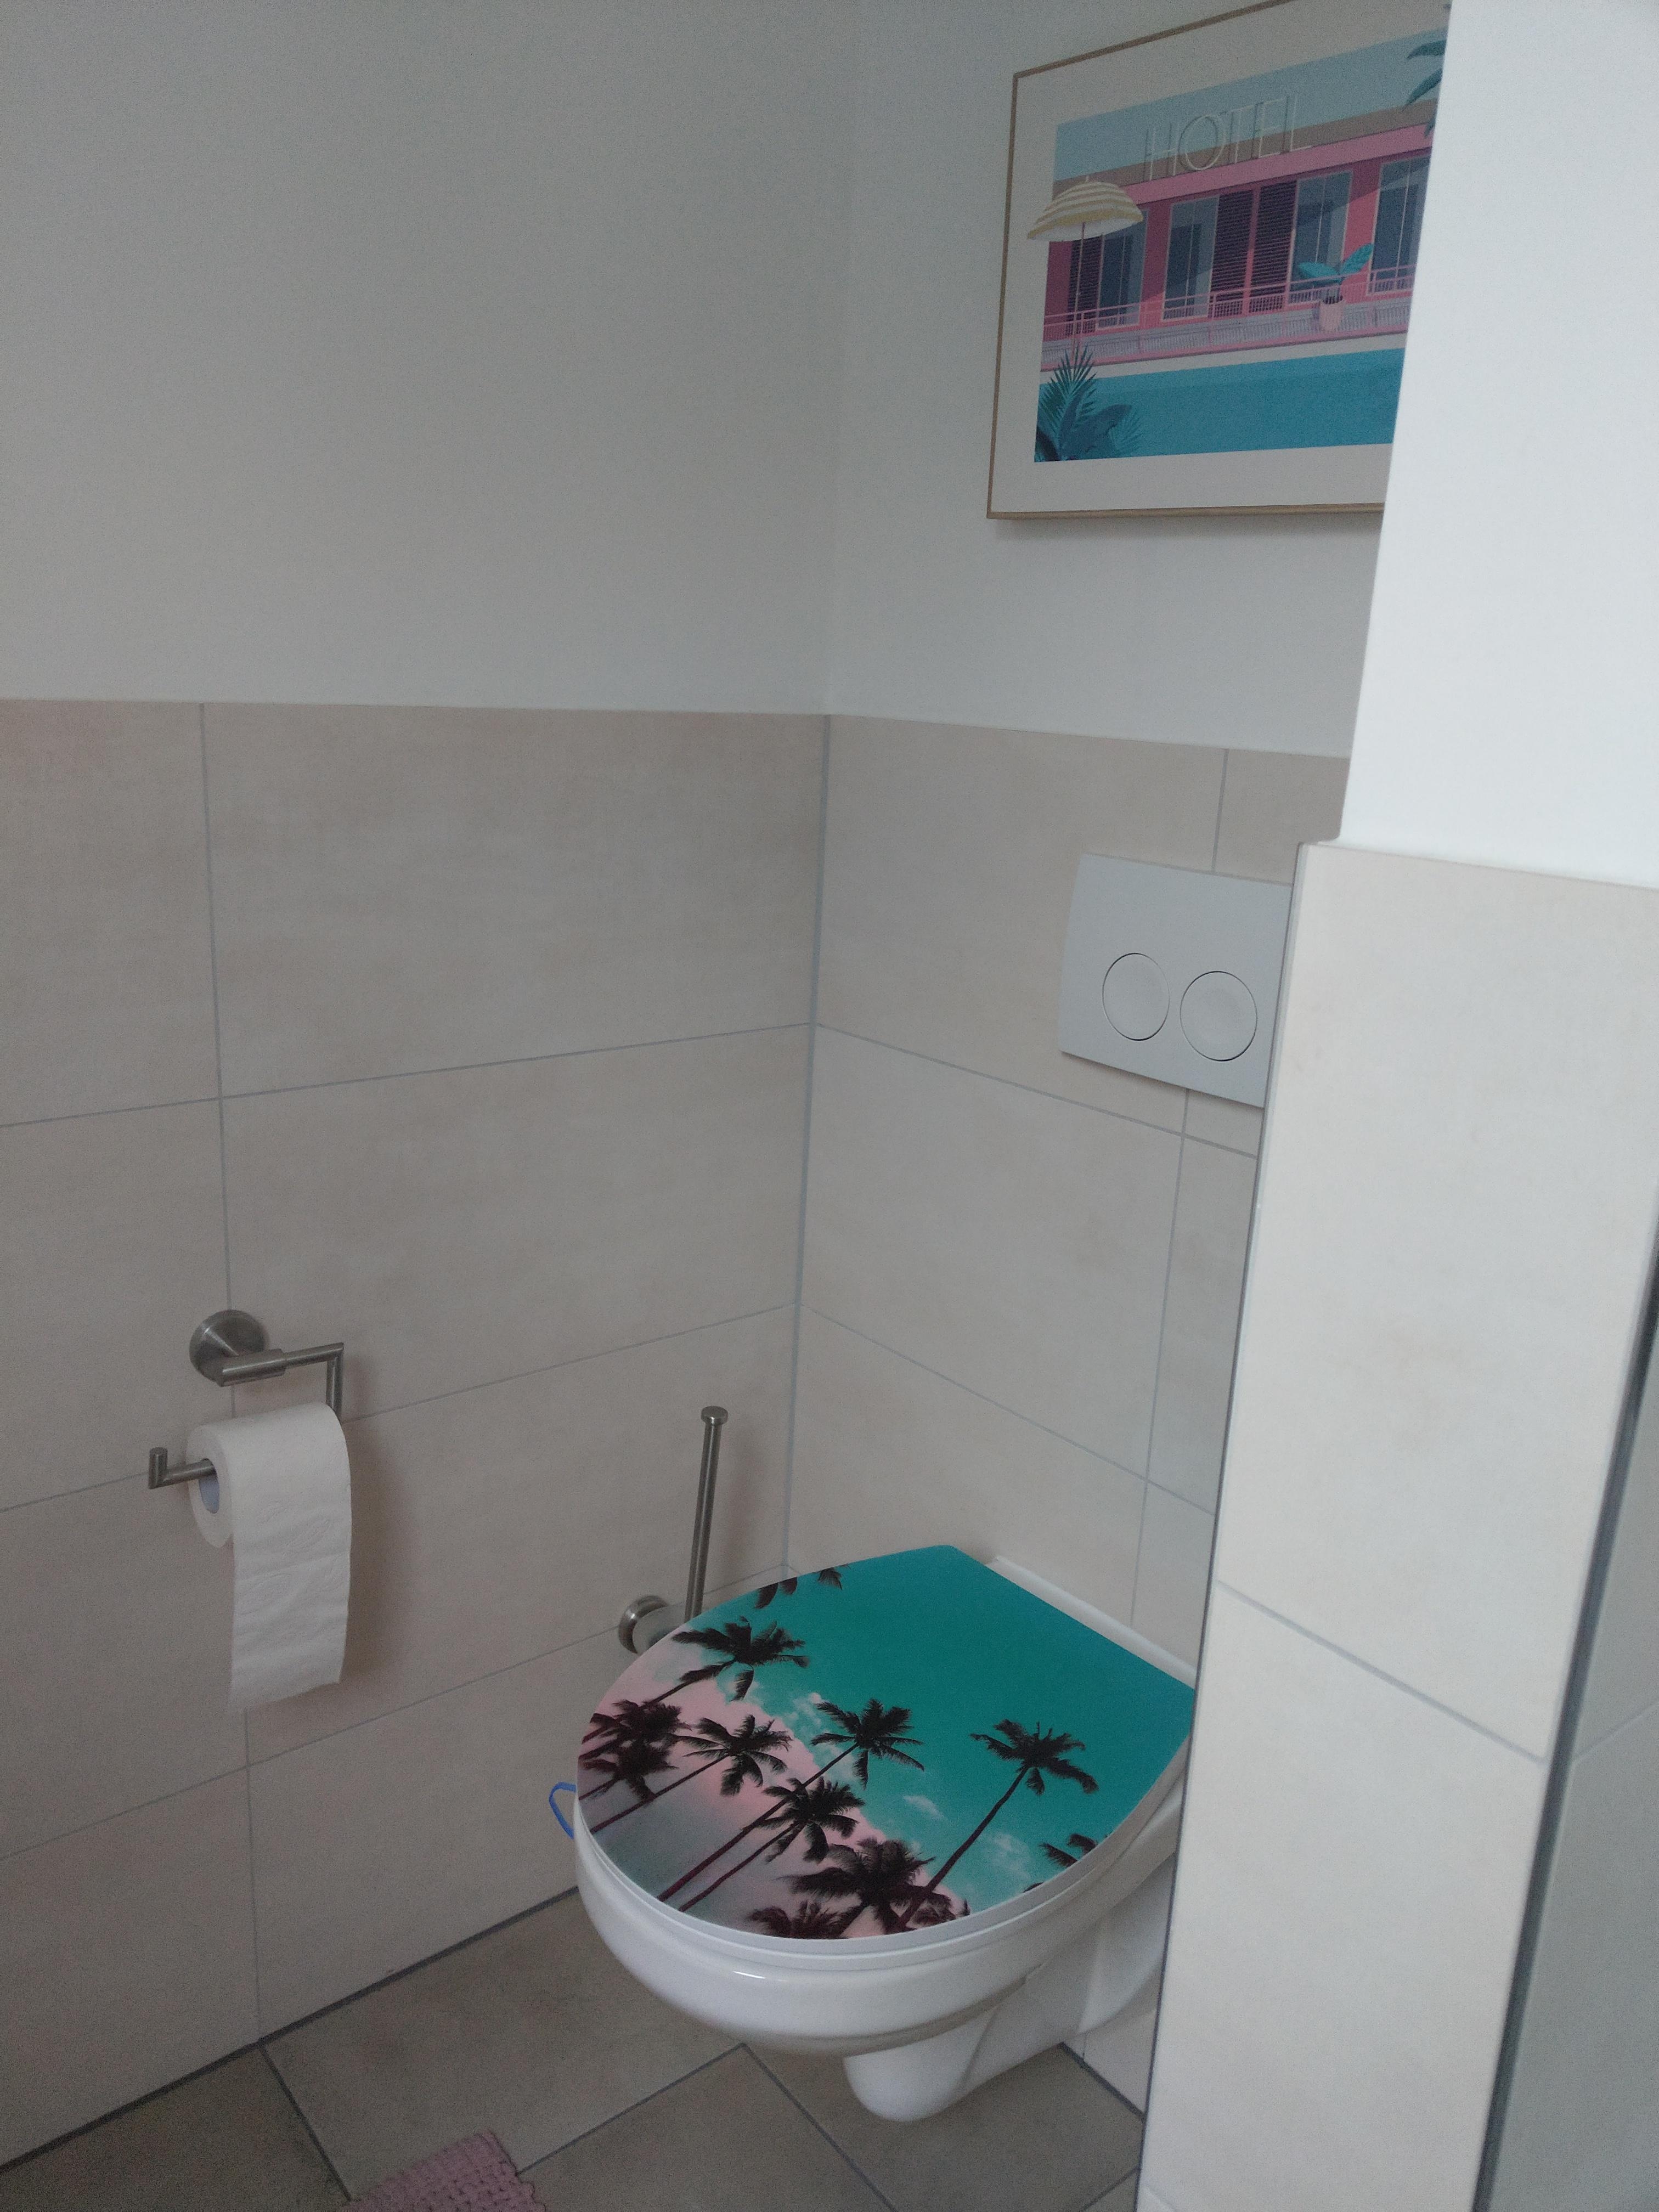 #badezimmer für #fernweh  #urlaubsstimmungzuhaus #livingchallenge 